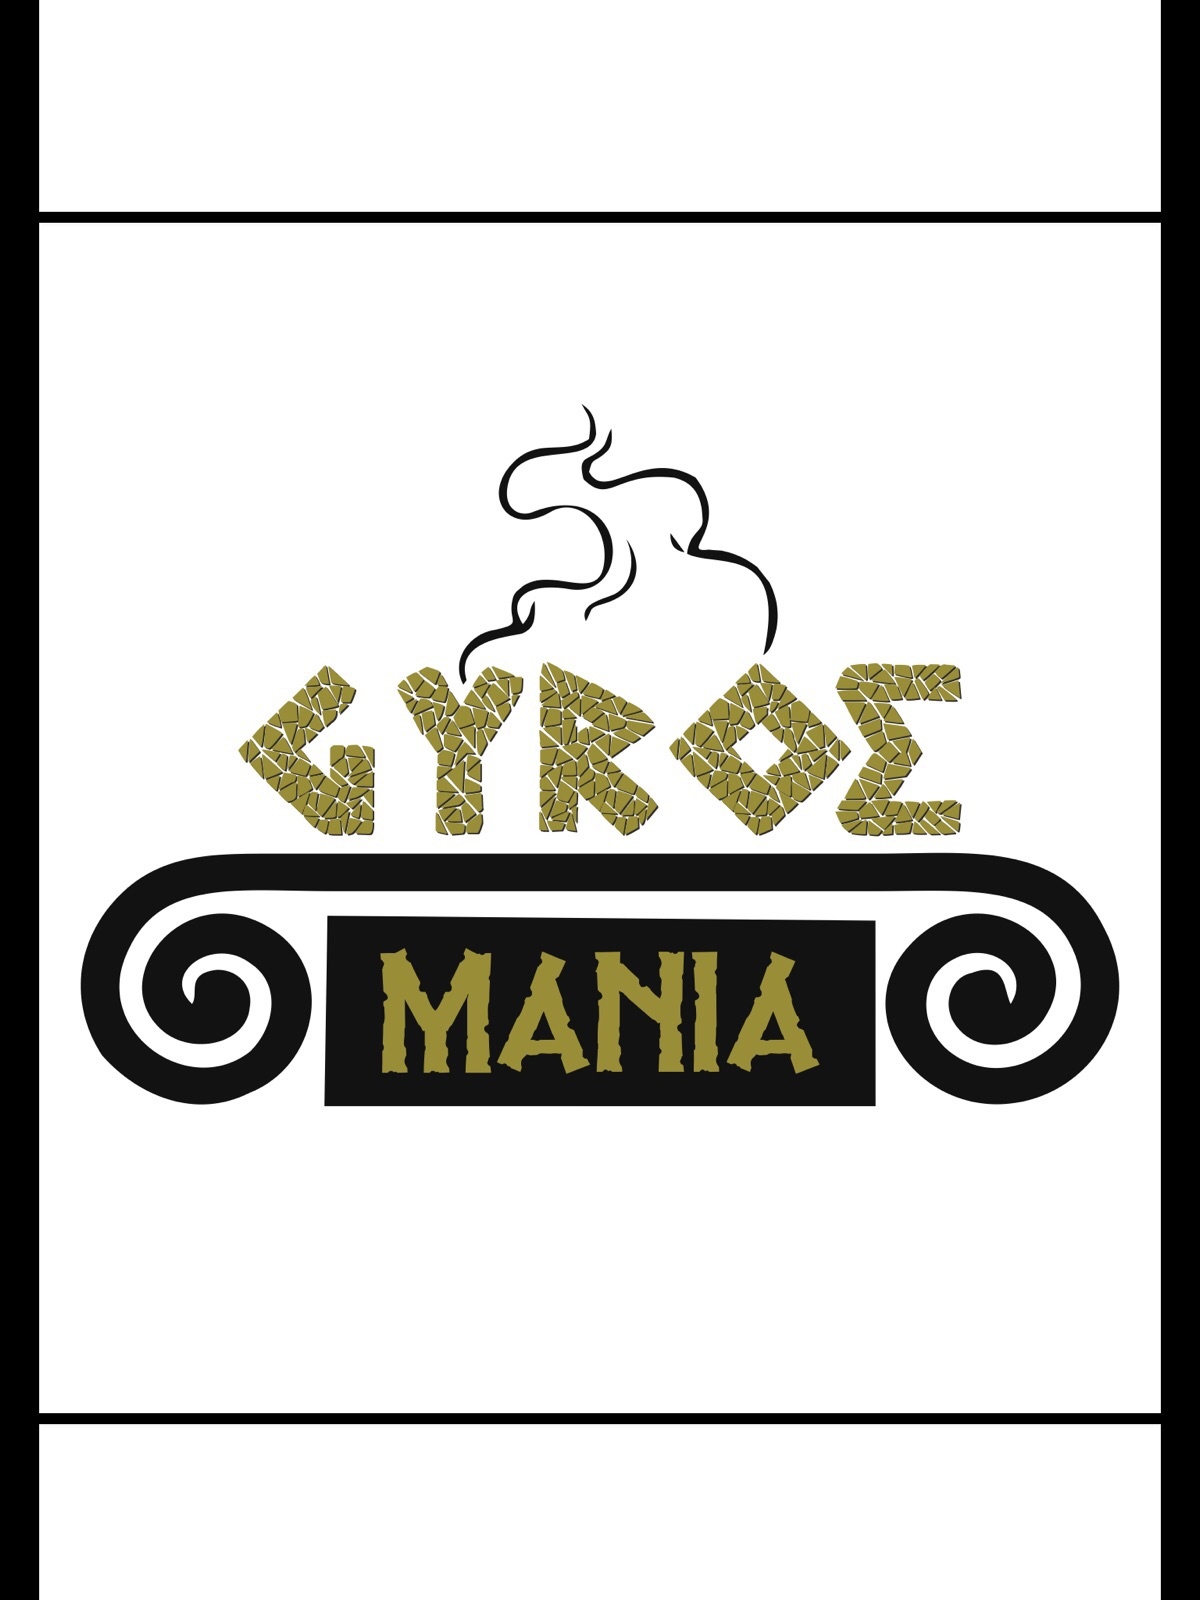 Gyros Mania